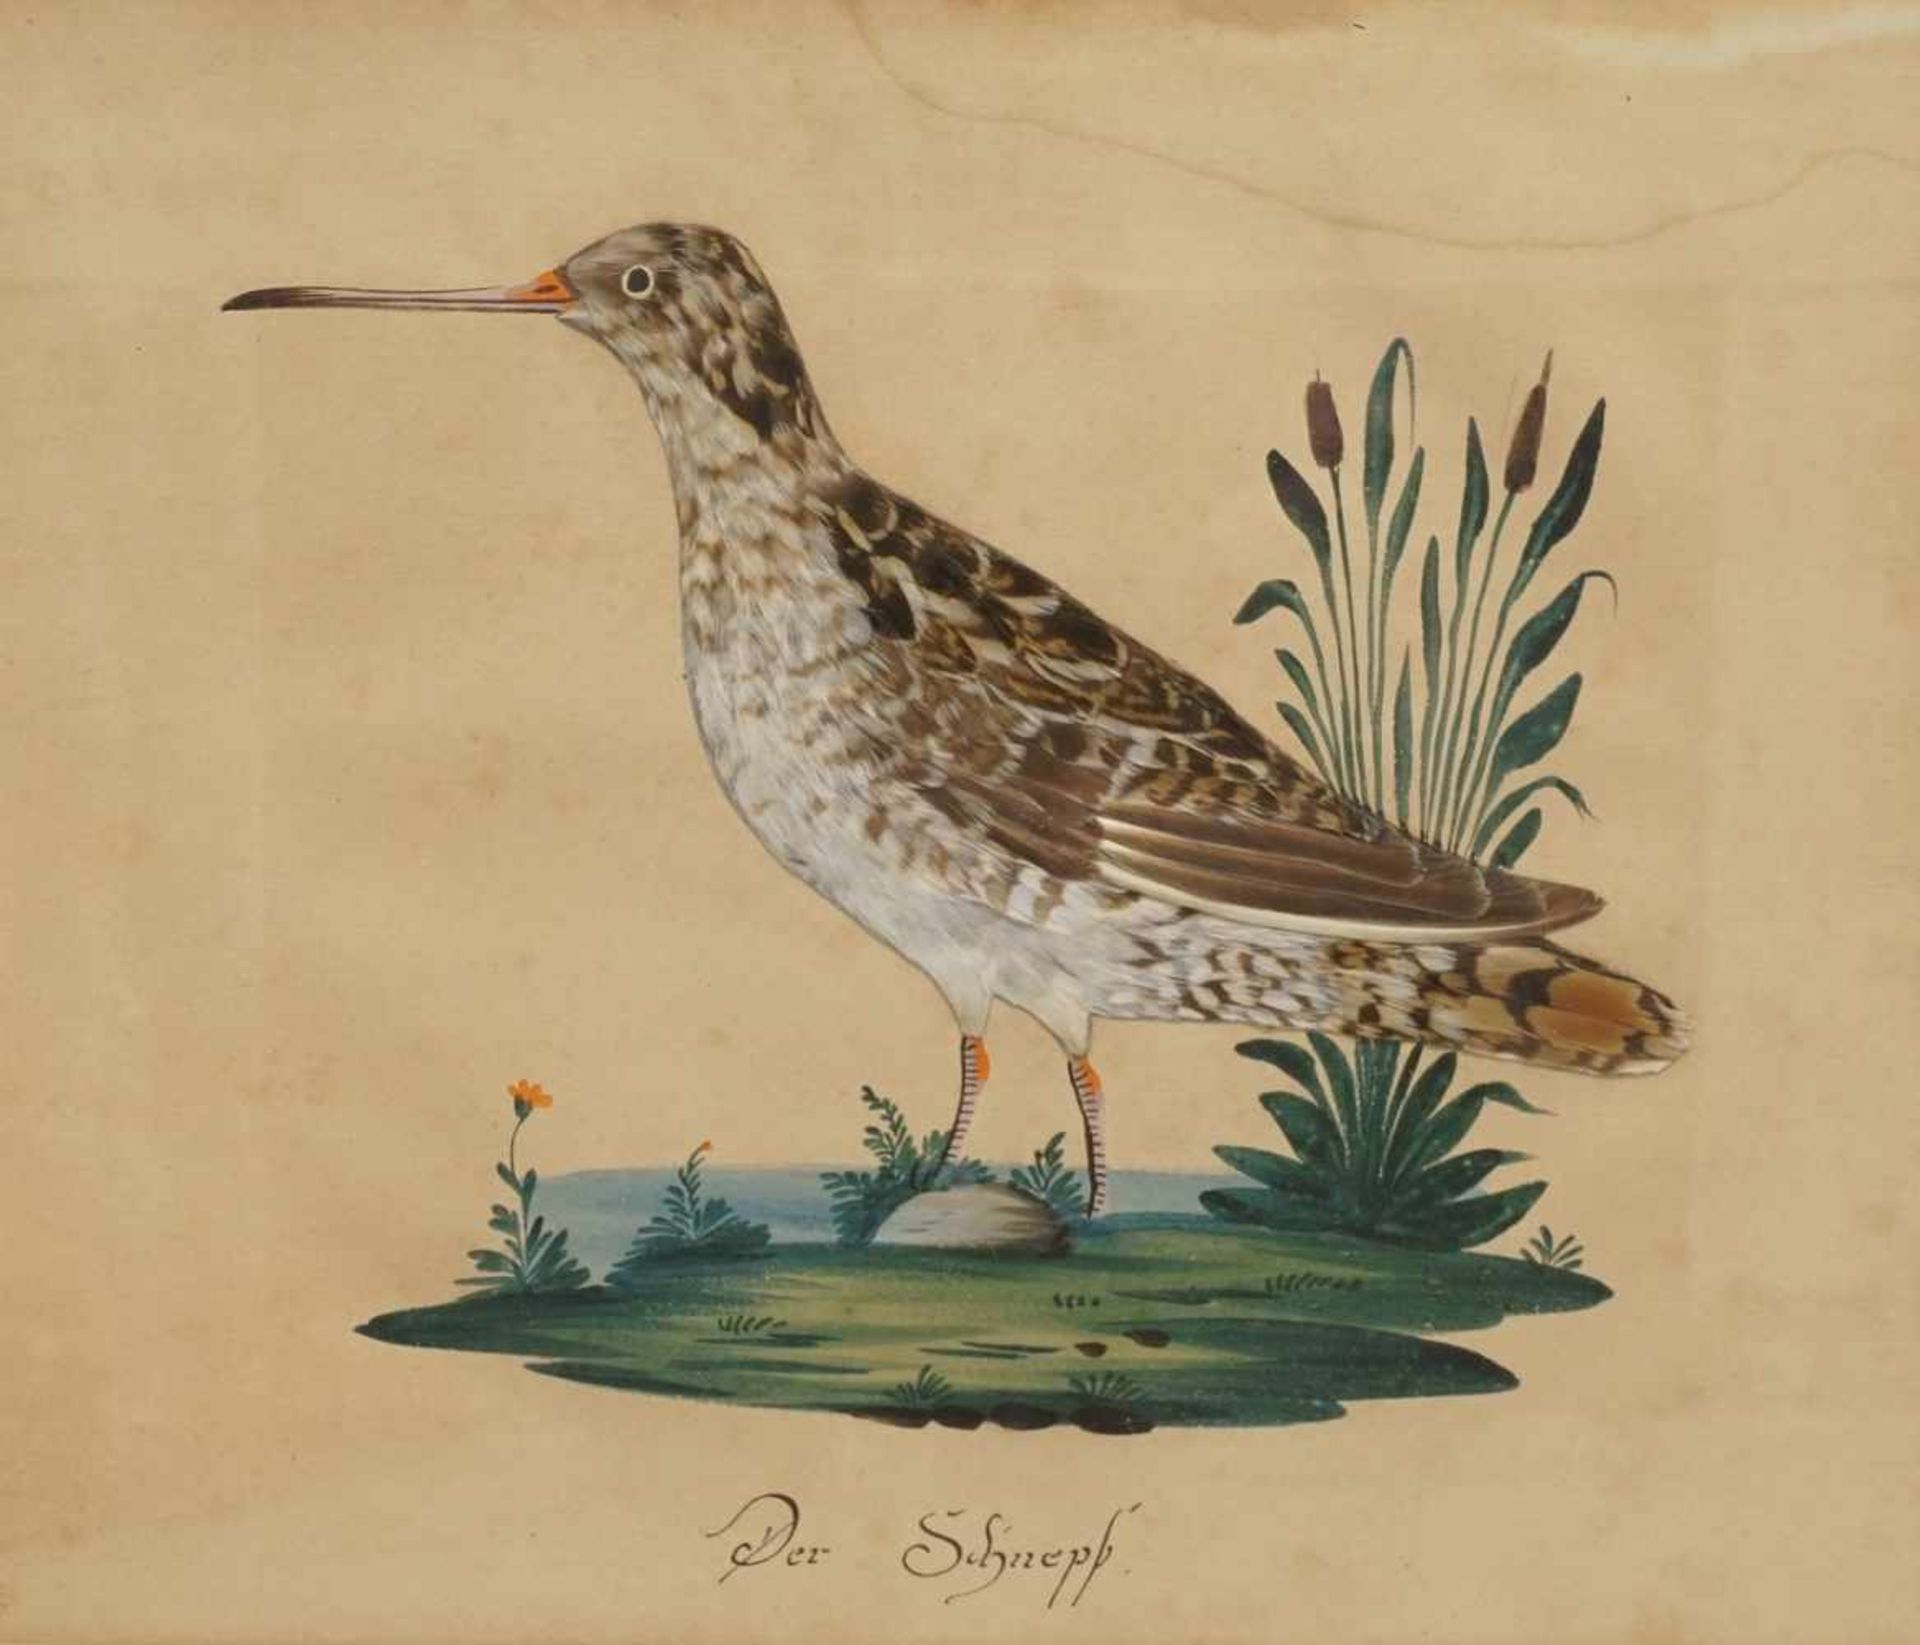 Unbekannter Maler, "Der Schnepf"Aquarell/Papier, um 1820, im Blatt bezeichnet, zusätzlich mit echten